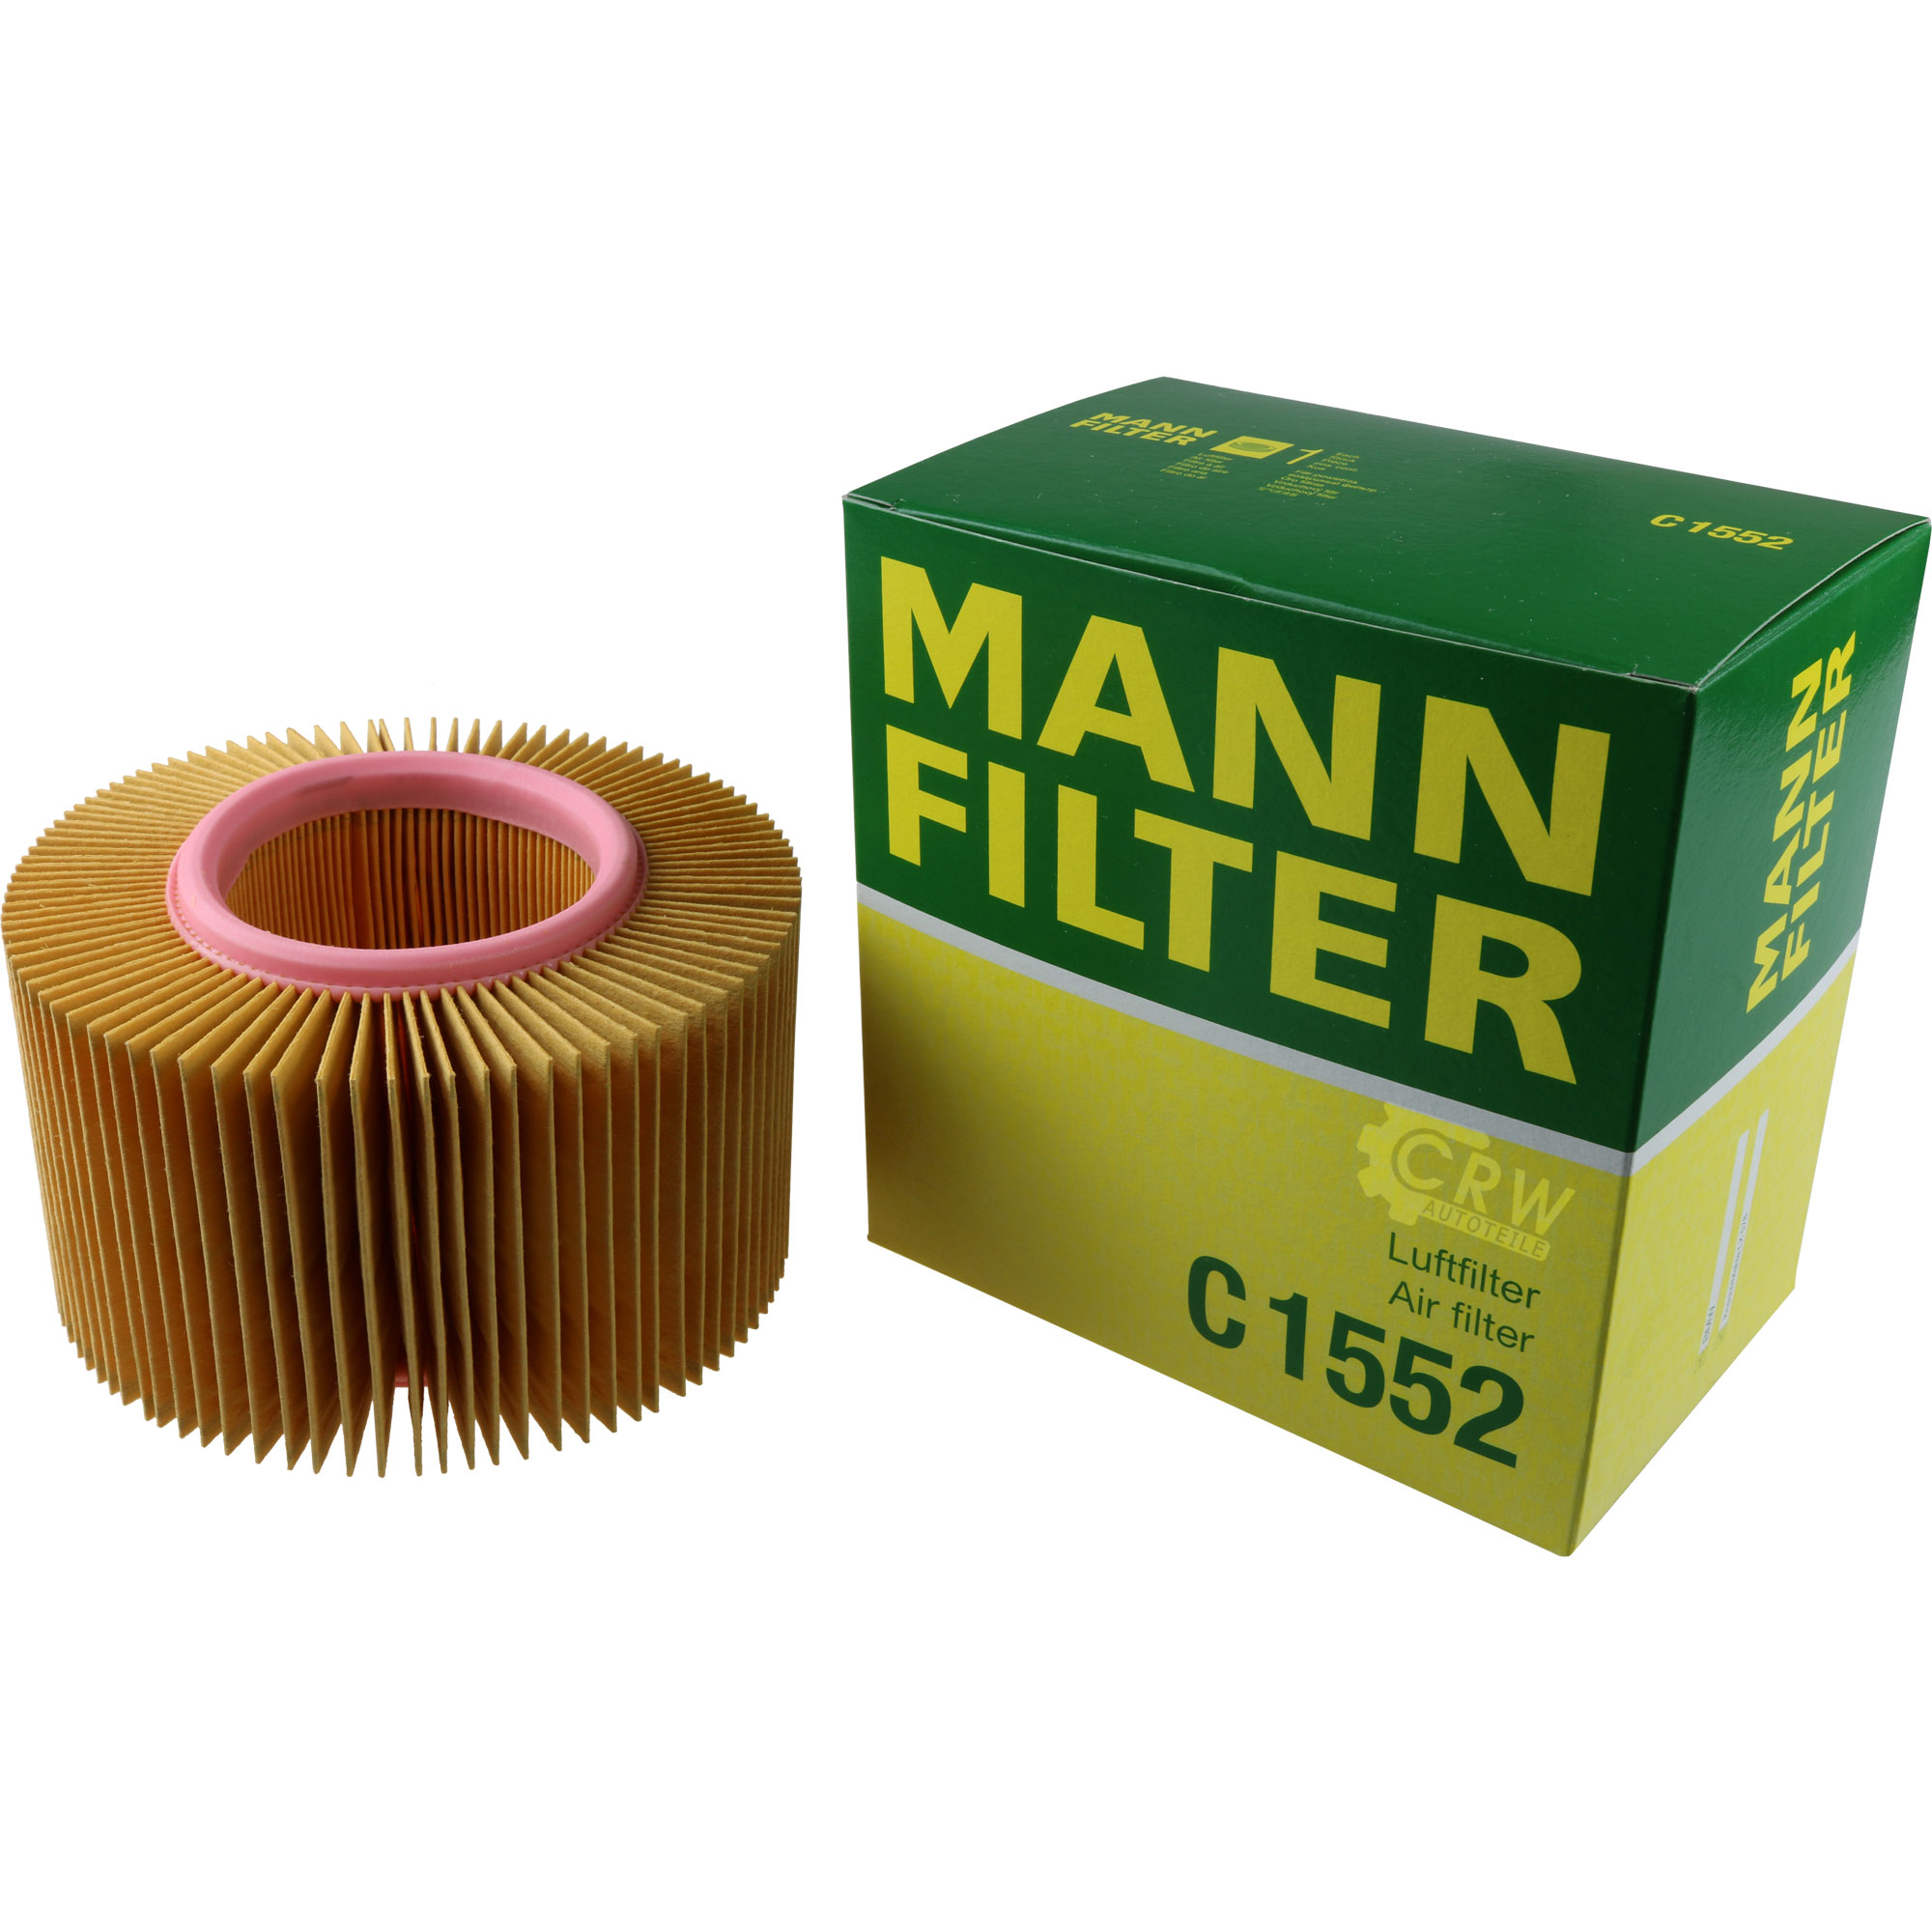 MANN-FILTER Luftfilter C 1552